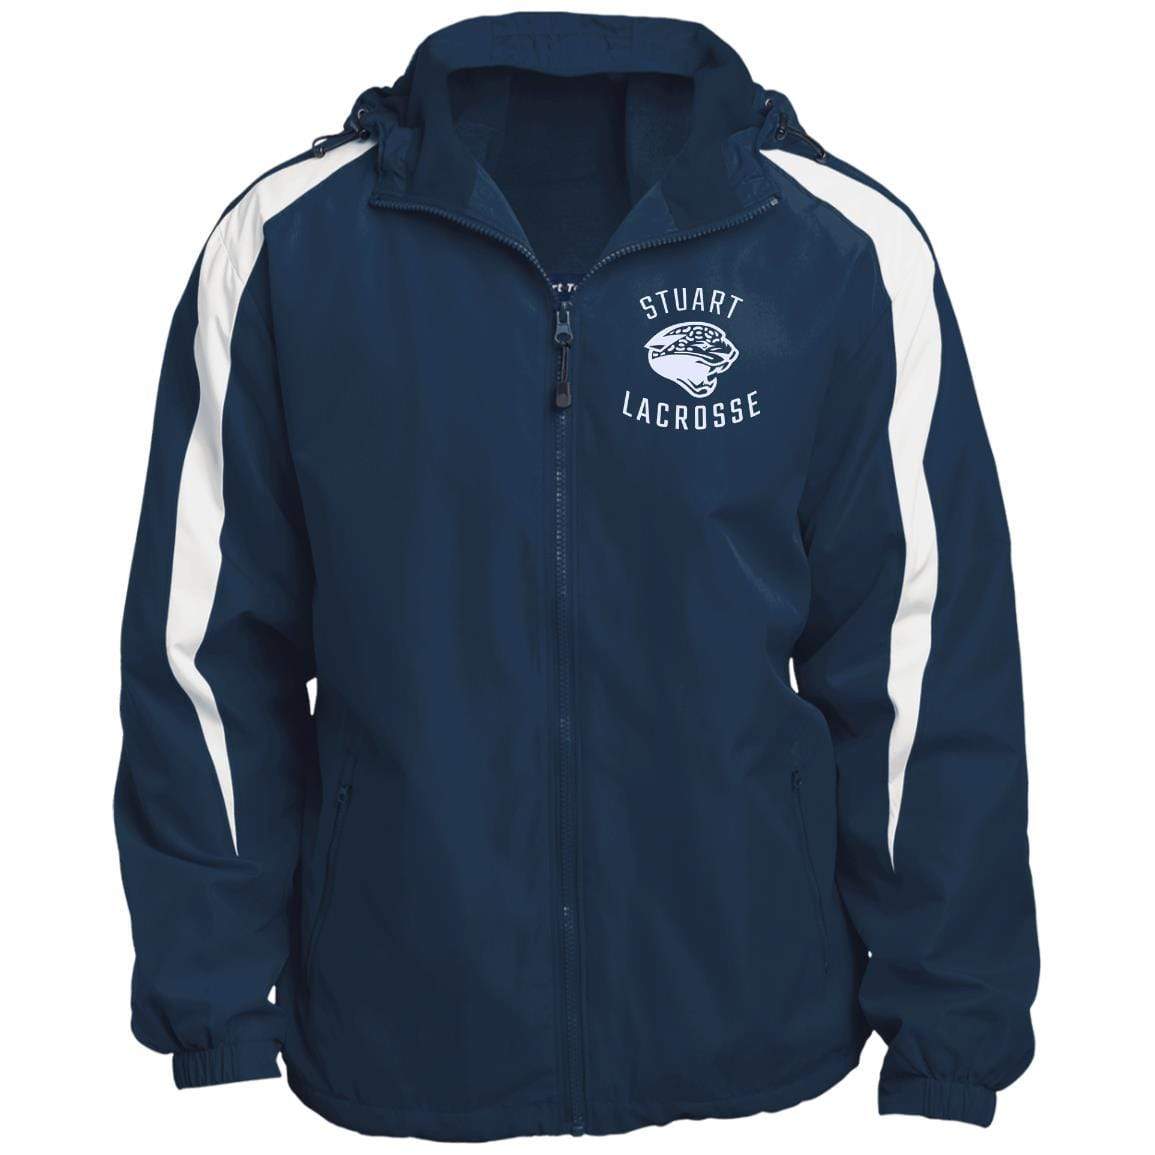 Stuart Lacrosse Fleece Lined Hooded Premium Jacket Signature Lacrosse